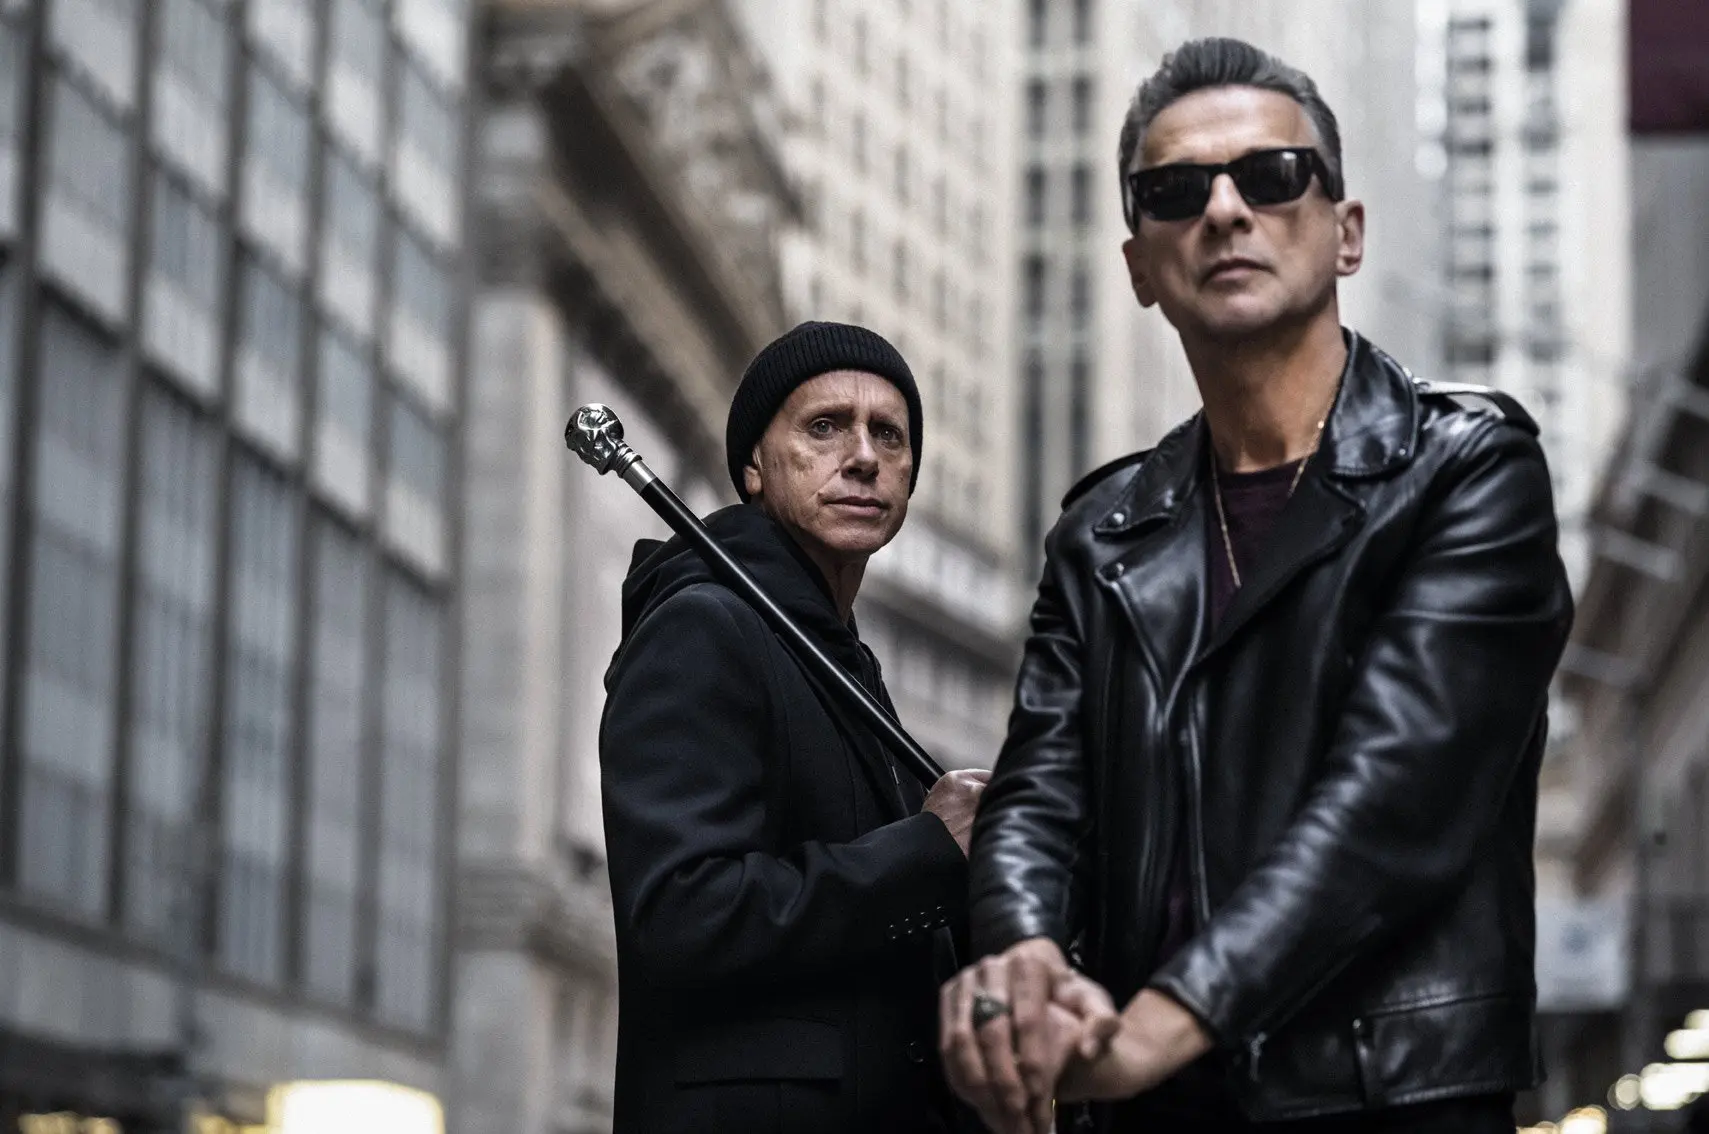 270 Depeche Mode ideas  depeche mode, dave gahan, martin gore